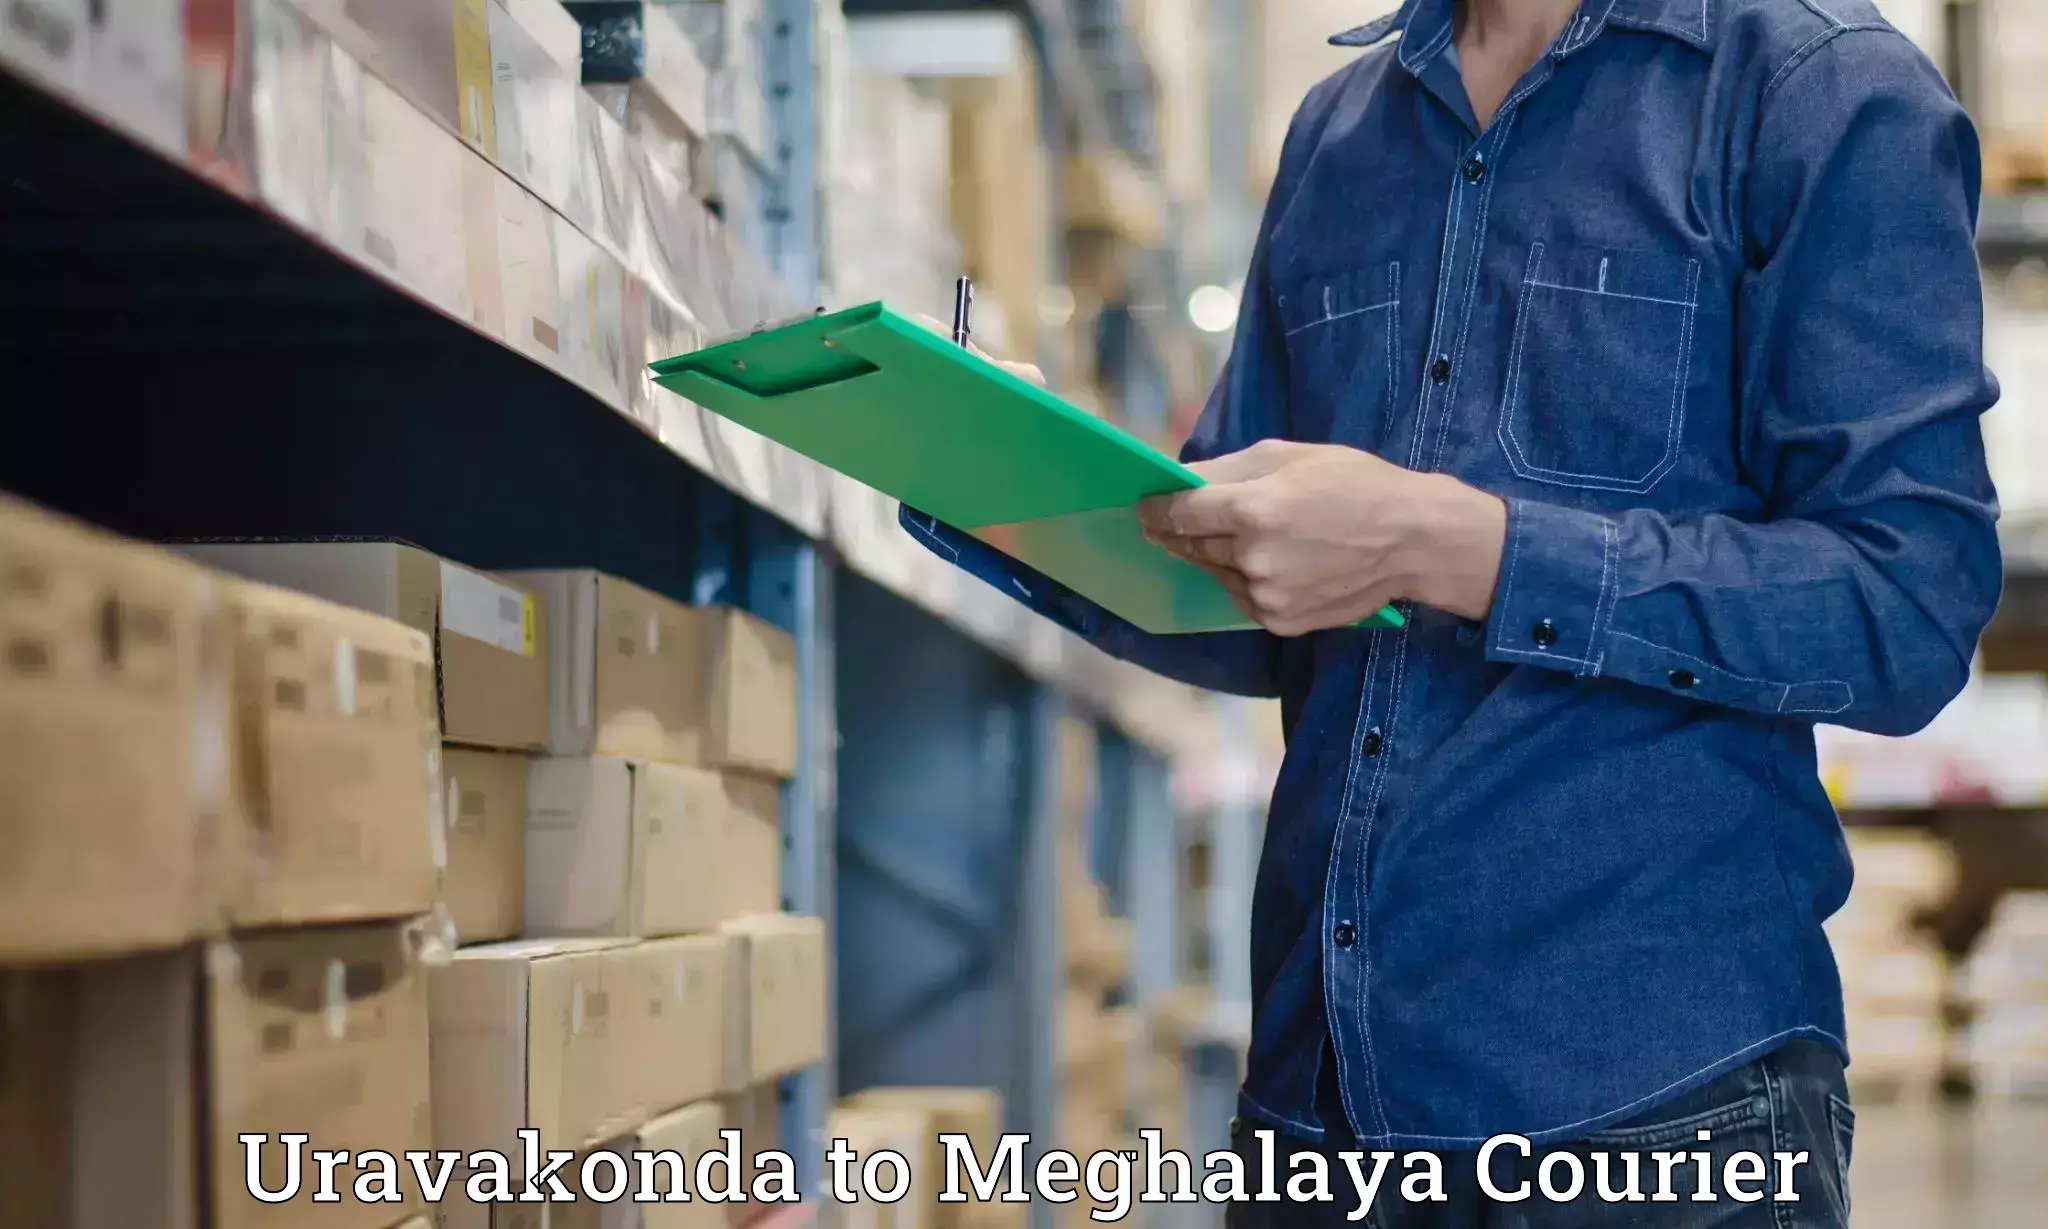 Luggage forwarding service Uravakonda to Meghalaya